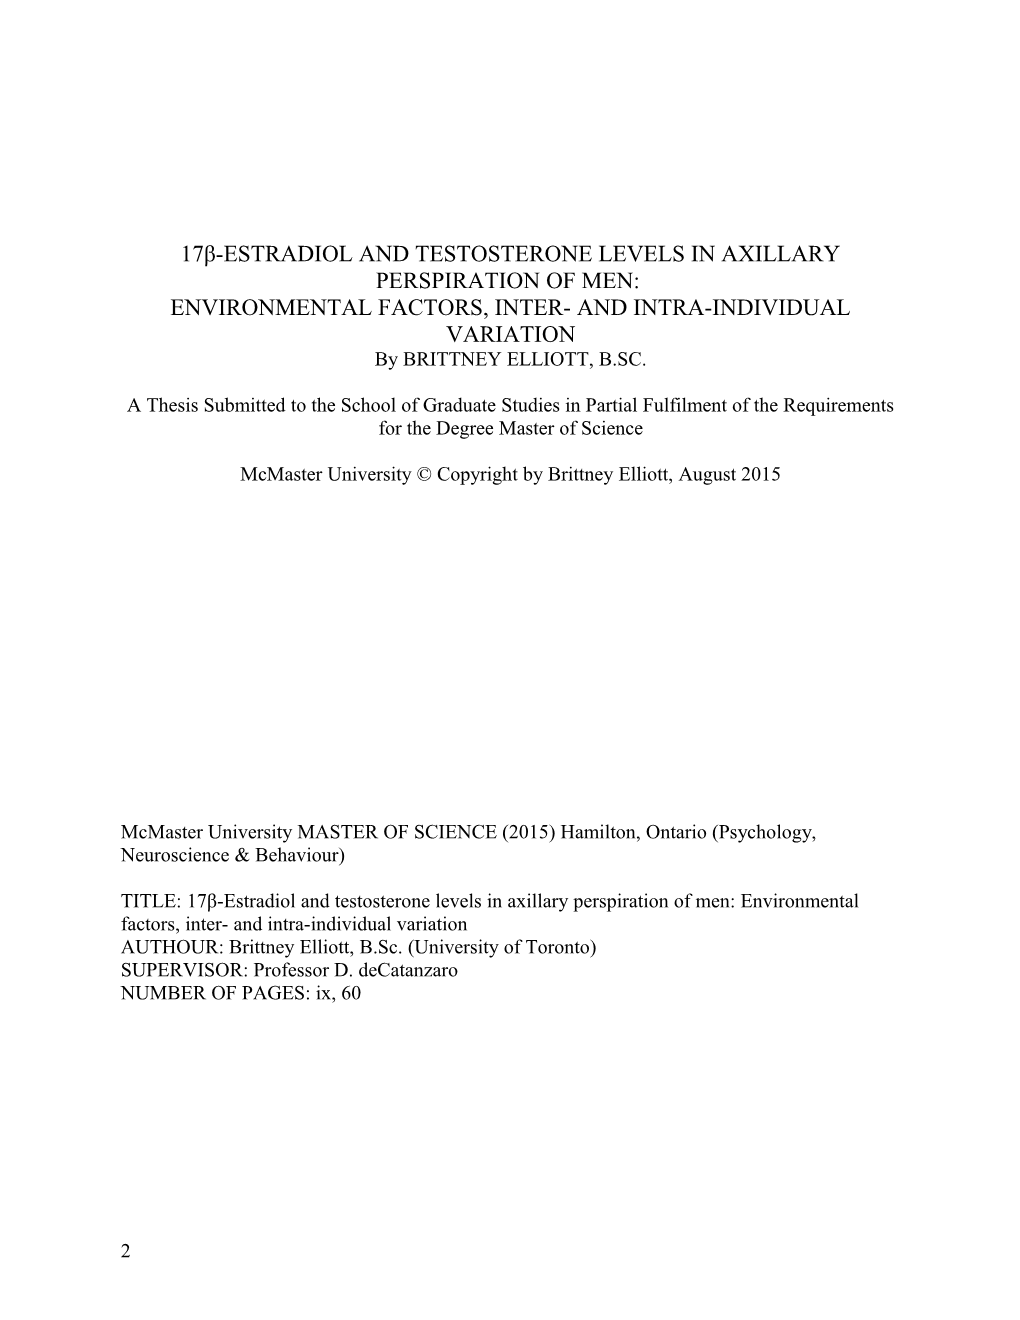 17Β-Estradiol and Testosterone Levels in Axillary Perspiration of Men: Environmental Factors